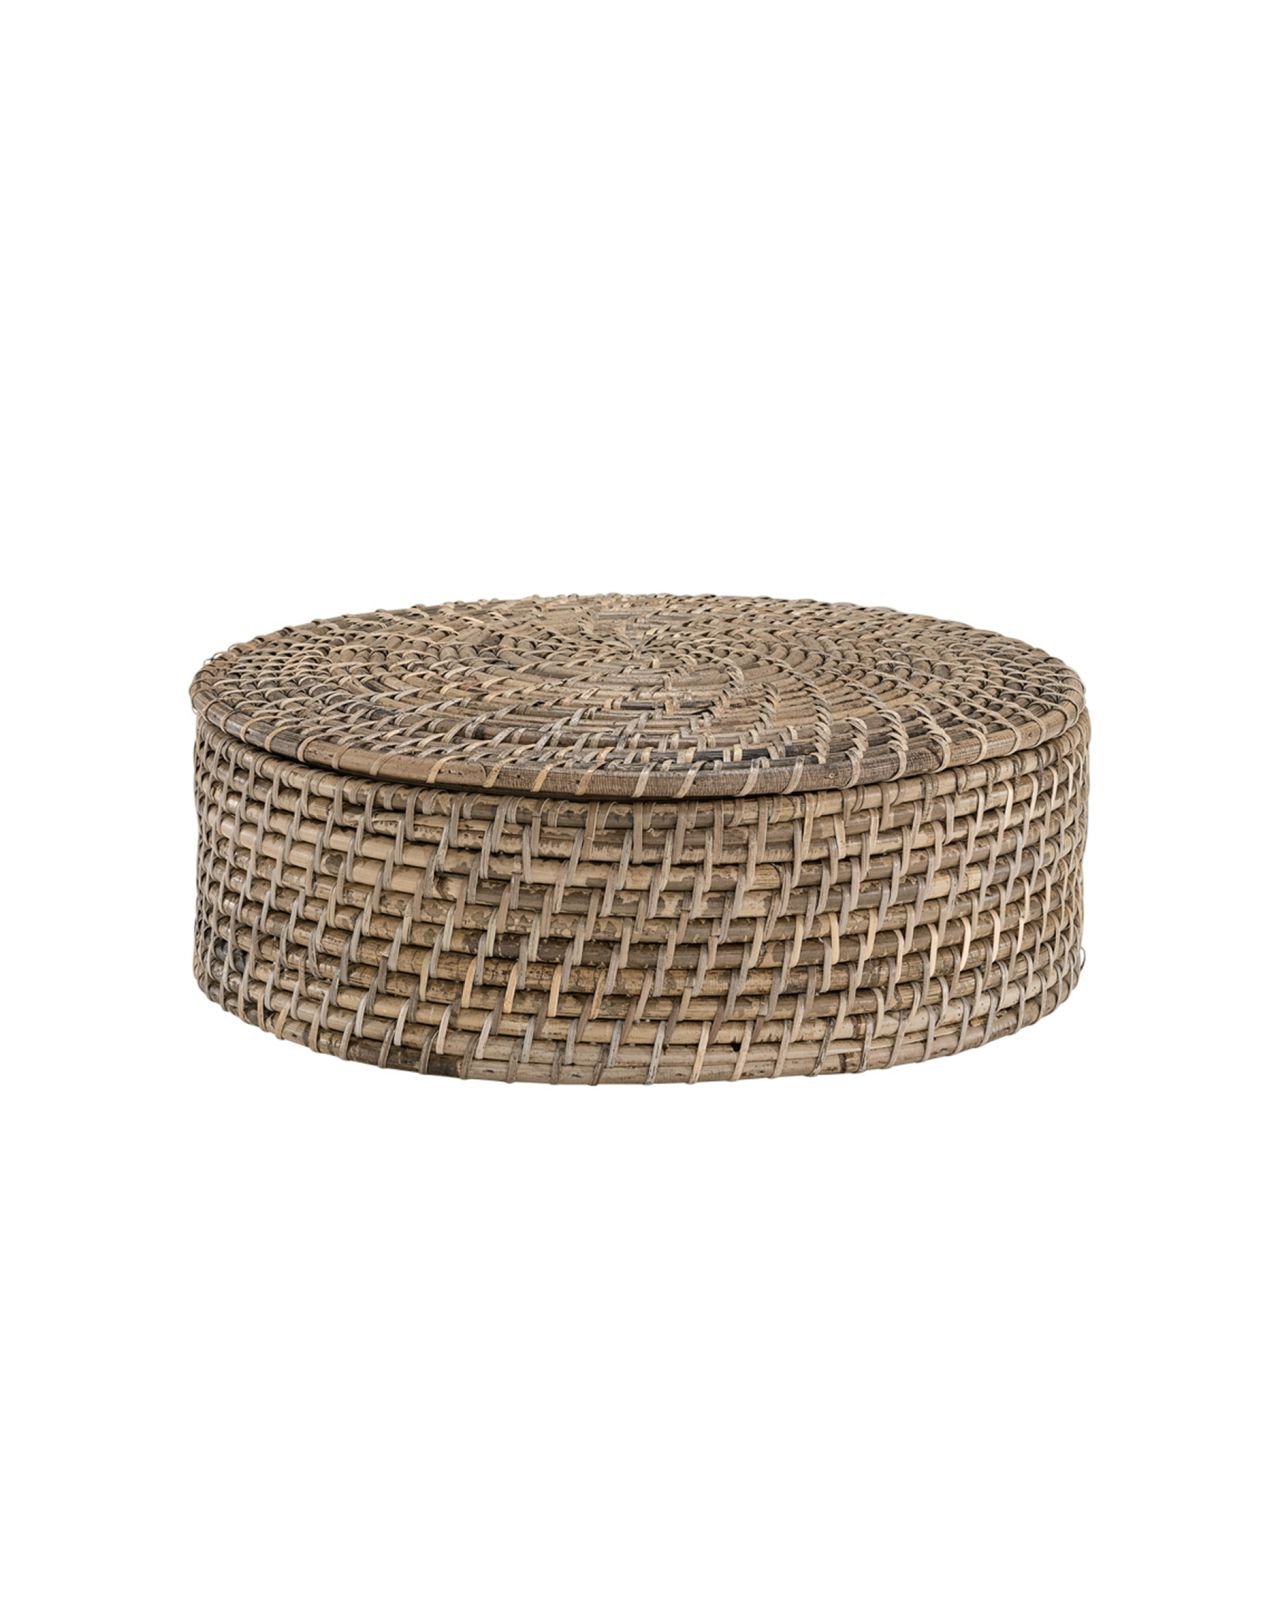 Amazon storage basket natural